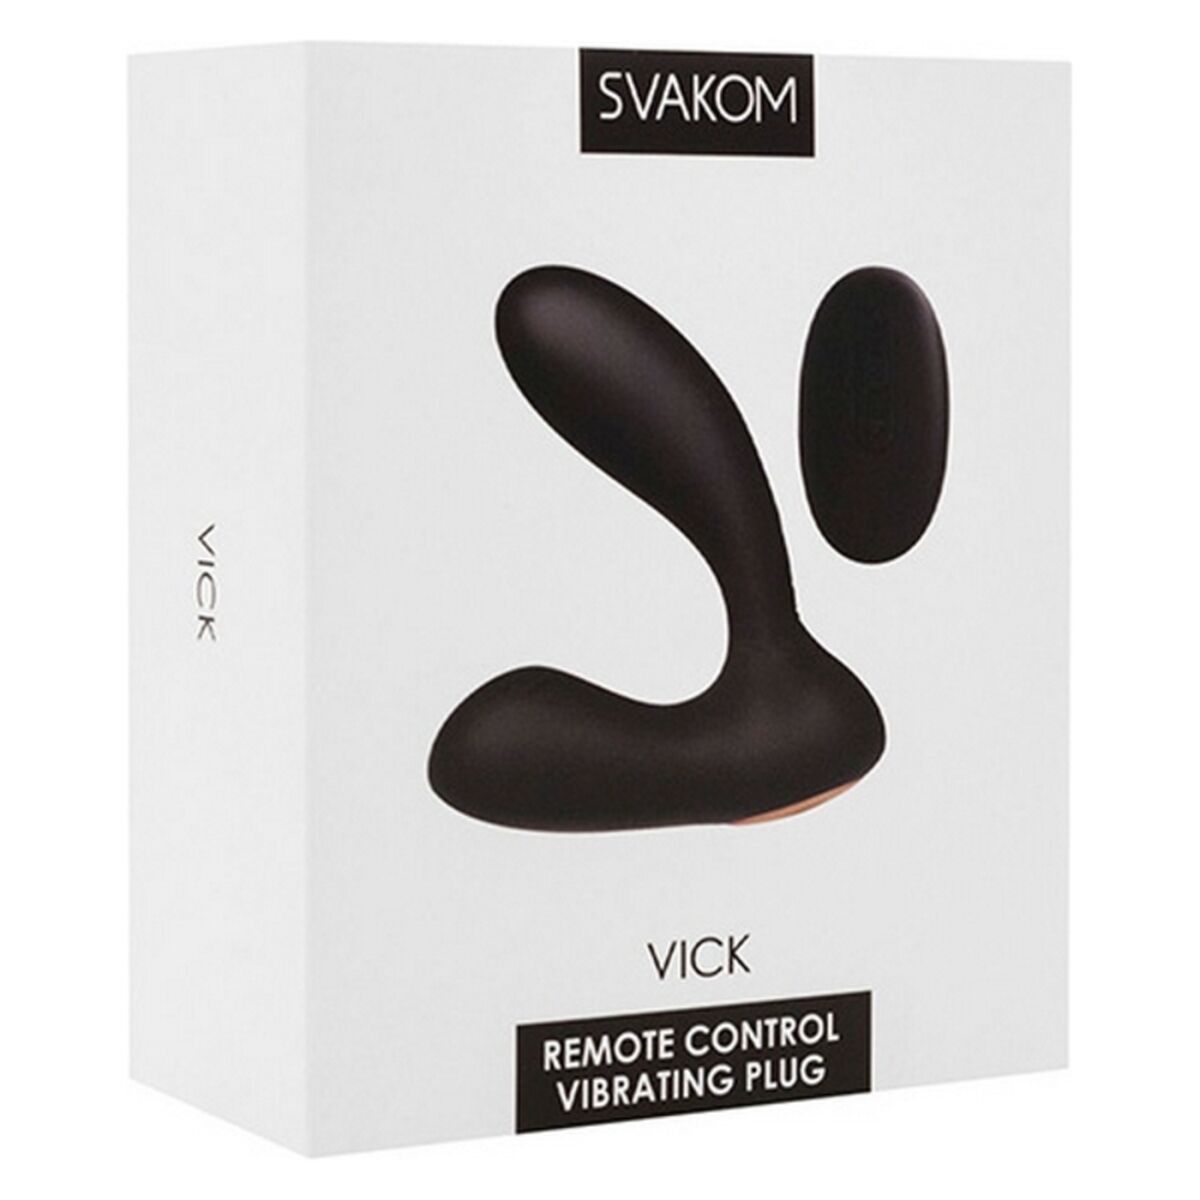 Kaufe Vick Powerful Plug Silikon Noir Prostatastimulator Svakom bei AWK Flagship um € 55.00